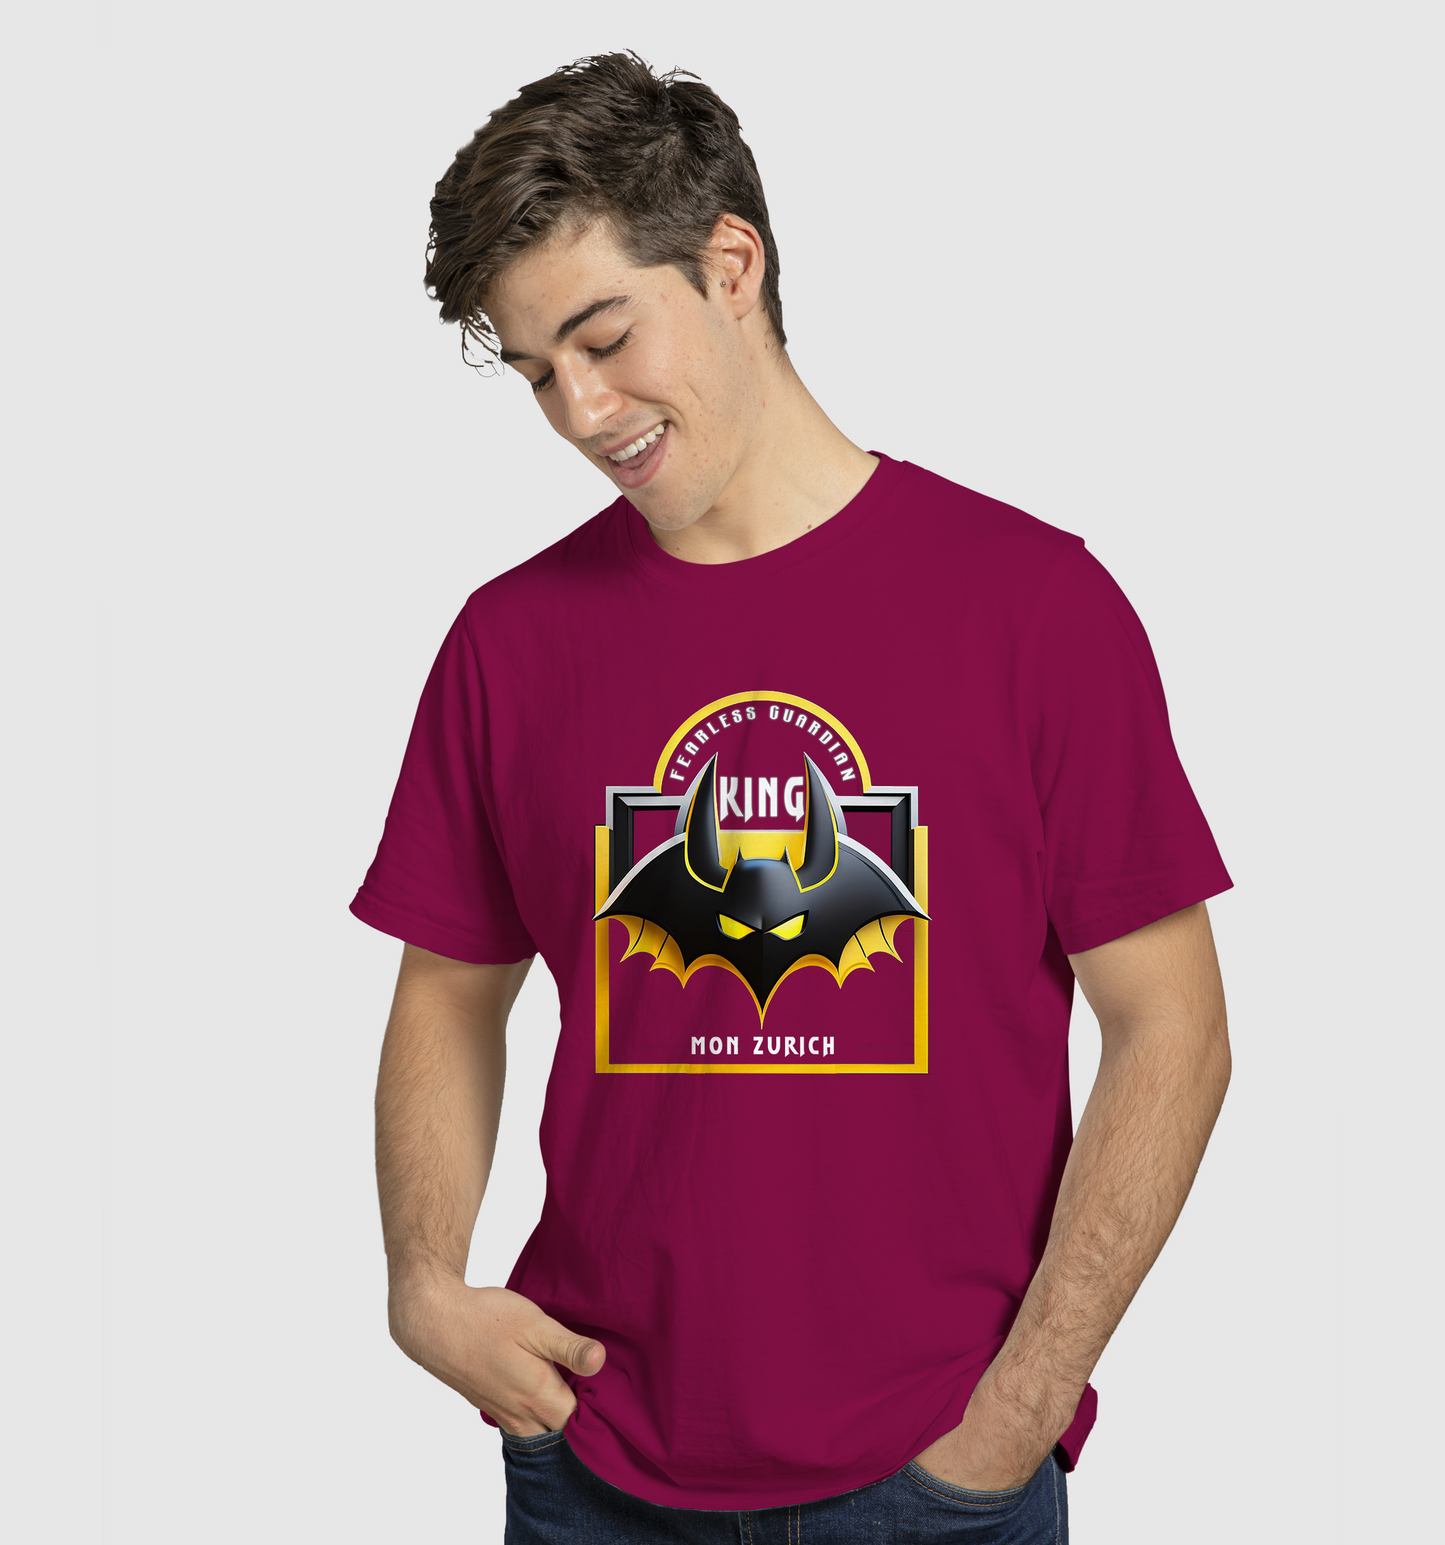 Bat King T-Shirt In Dark - Mon Zurich Originals